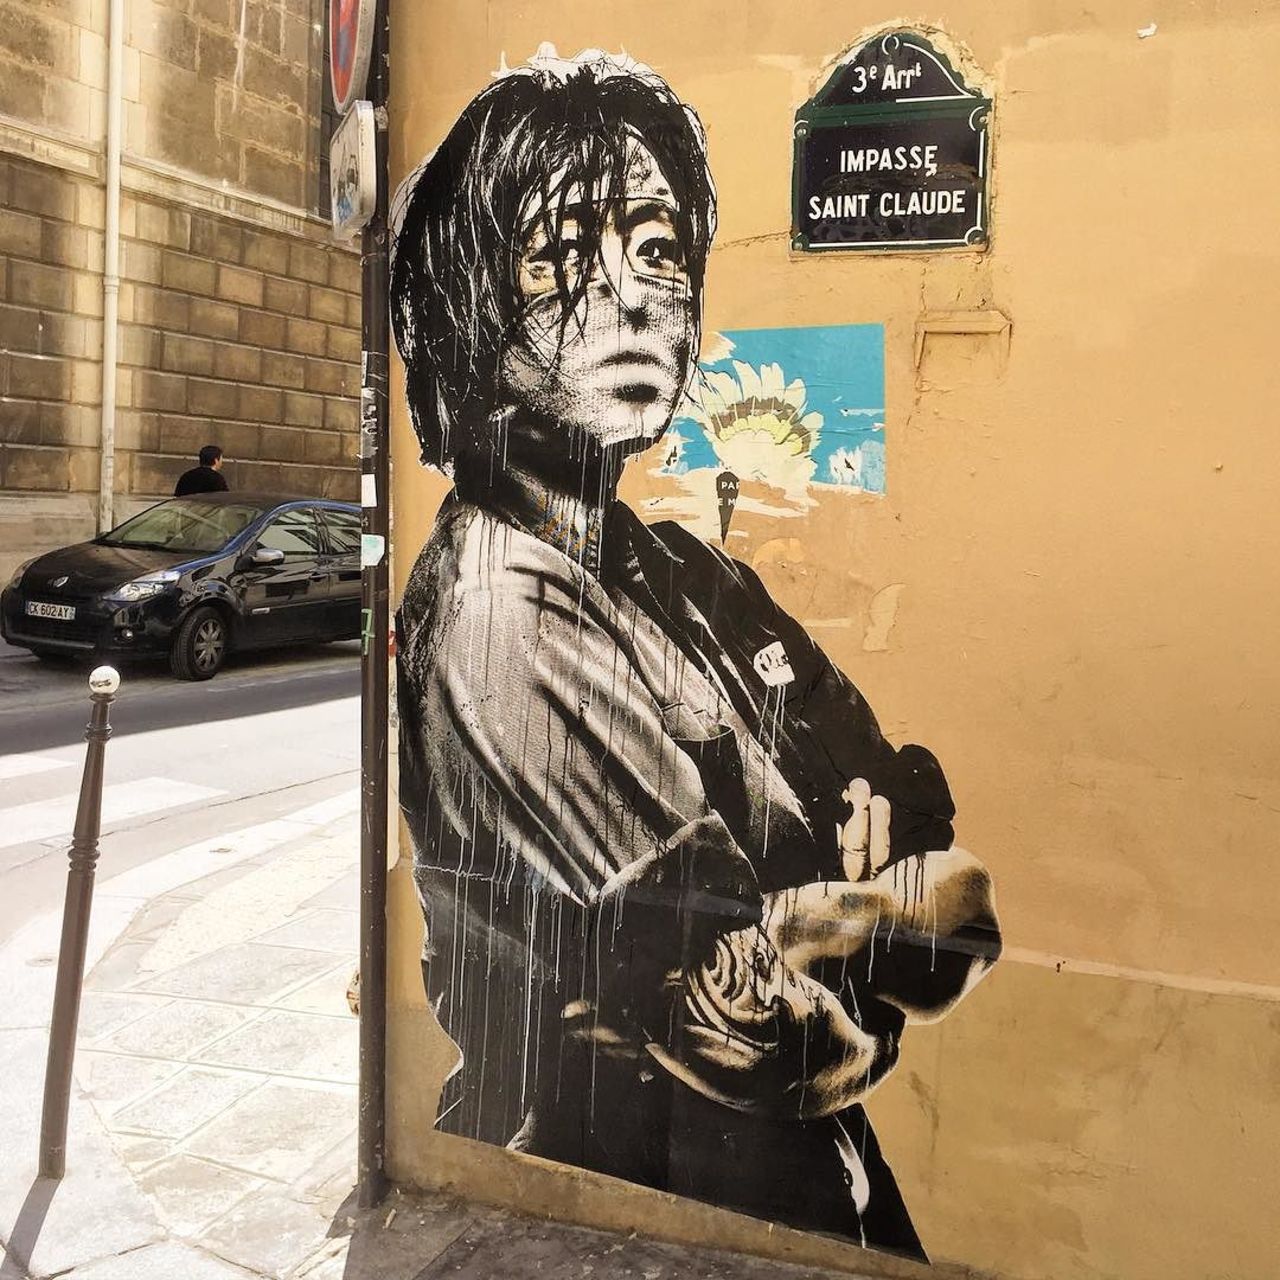 #Paris #graffiti photo by @jeanlucr http://ift.tt/1LJLGEG #StreetArt https://t.co/NS0CcLy5uf